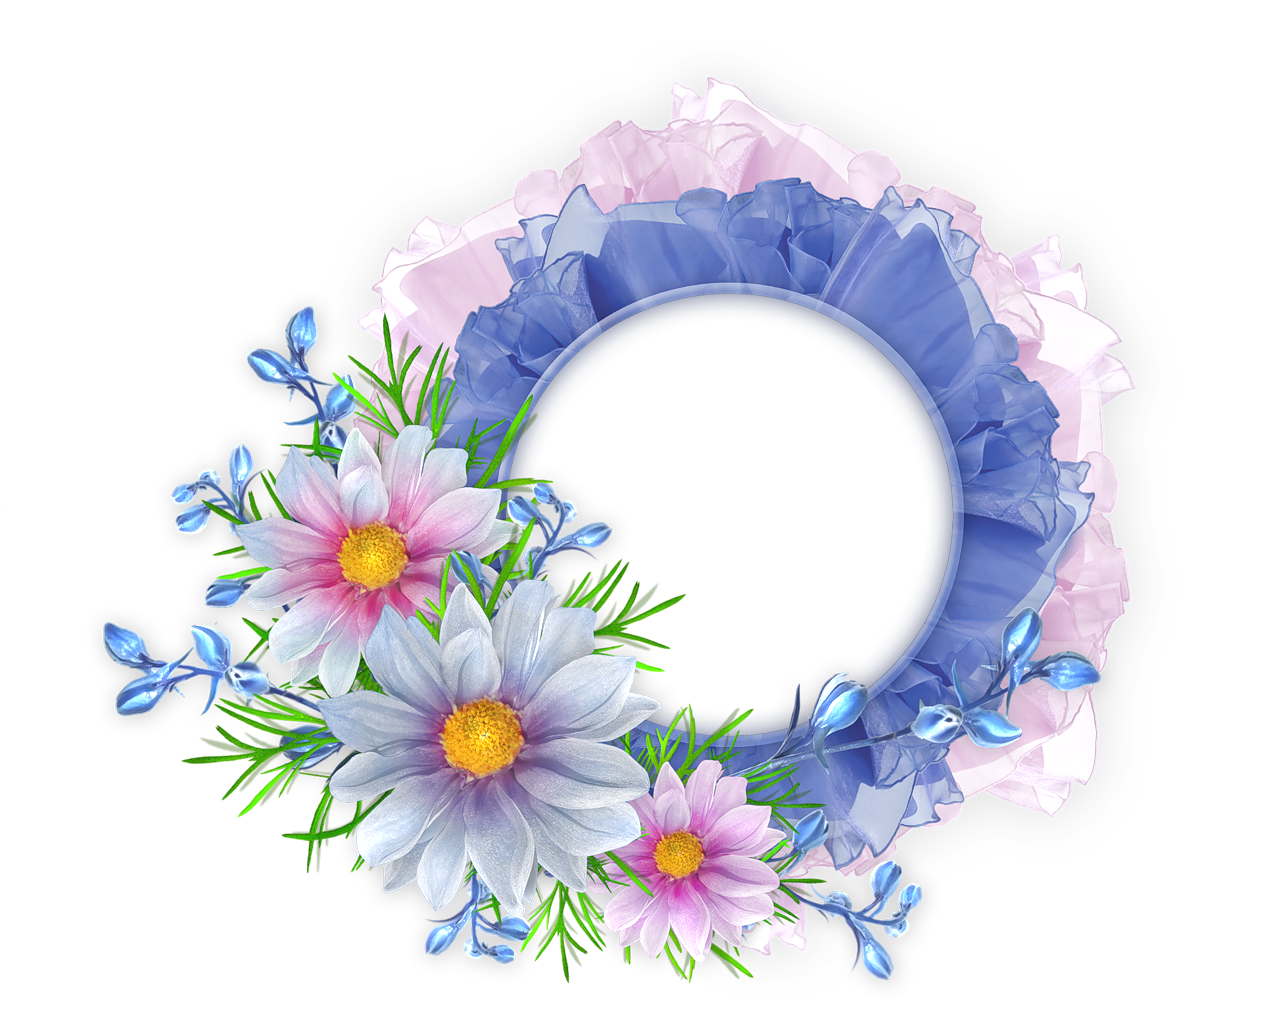 Floral Round Frame Image PNG Image